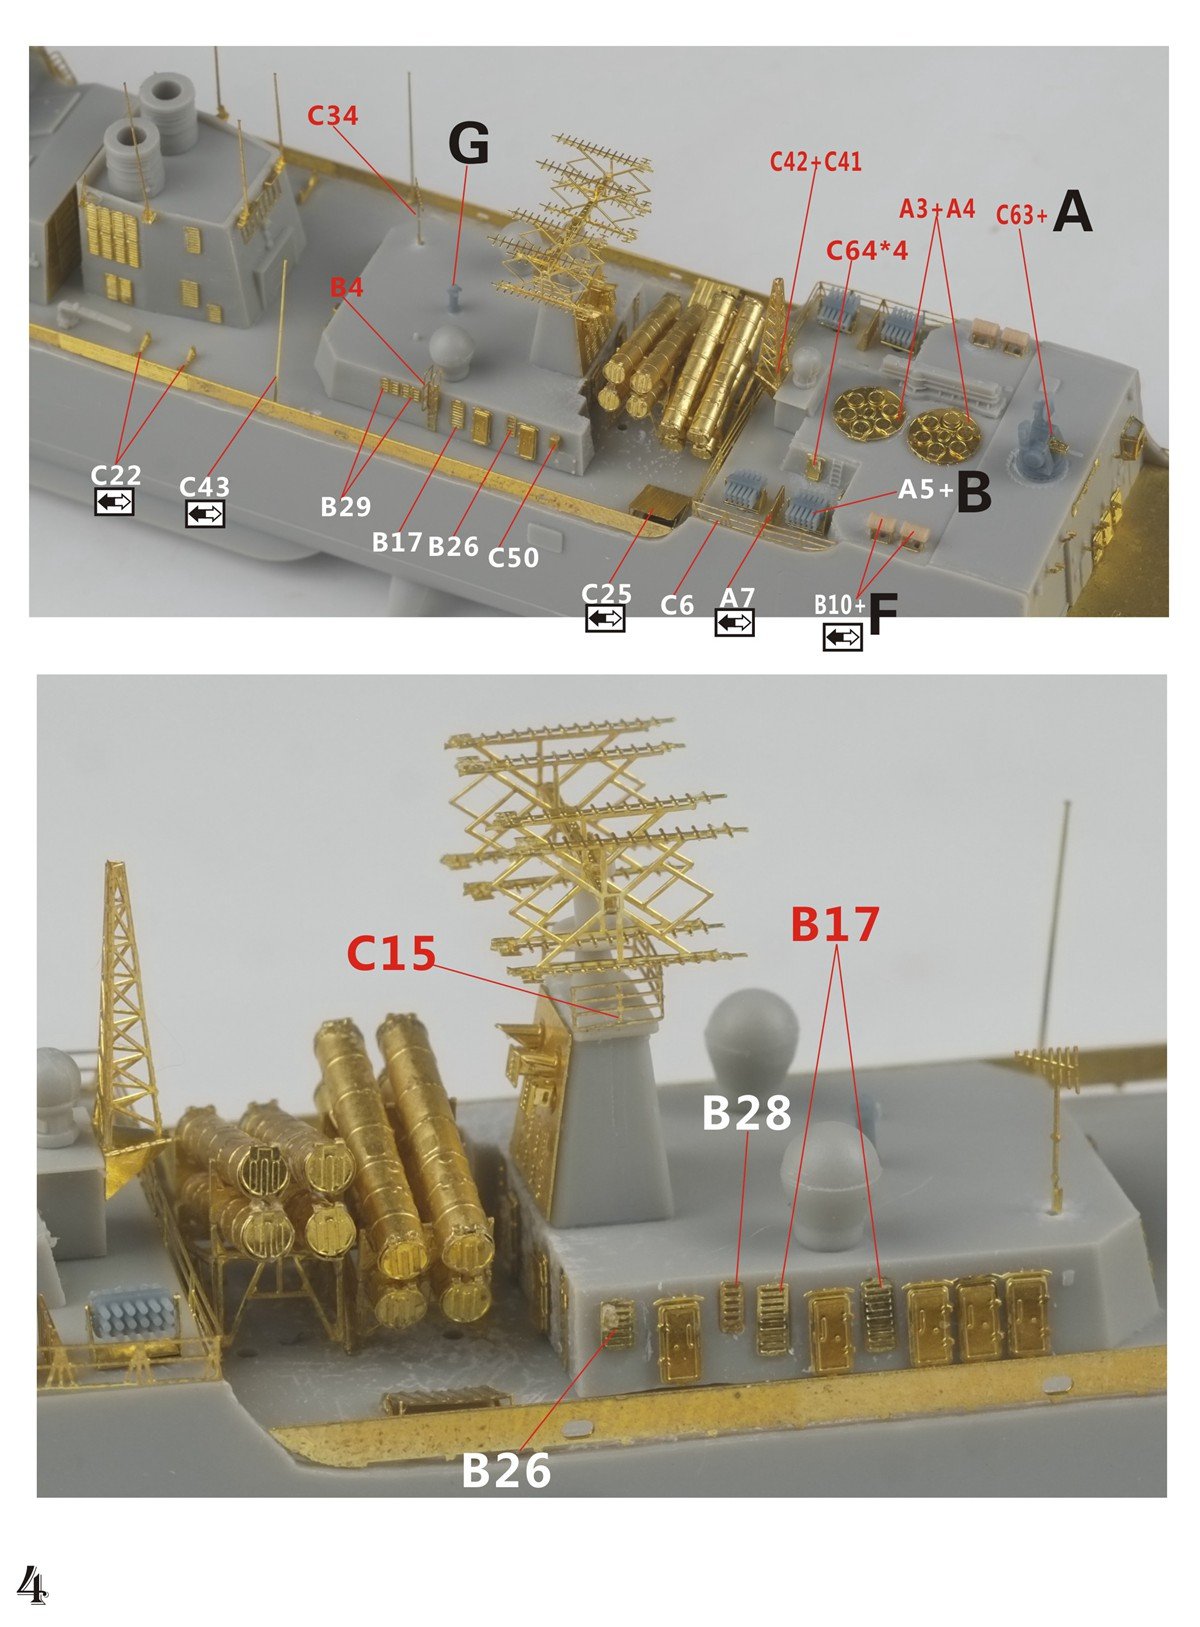 1/700 现代中国海军052C型驱逐舰升级改造套件(配小号手06730) - 点击图像关闭